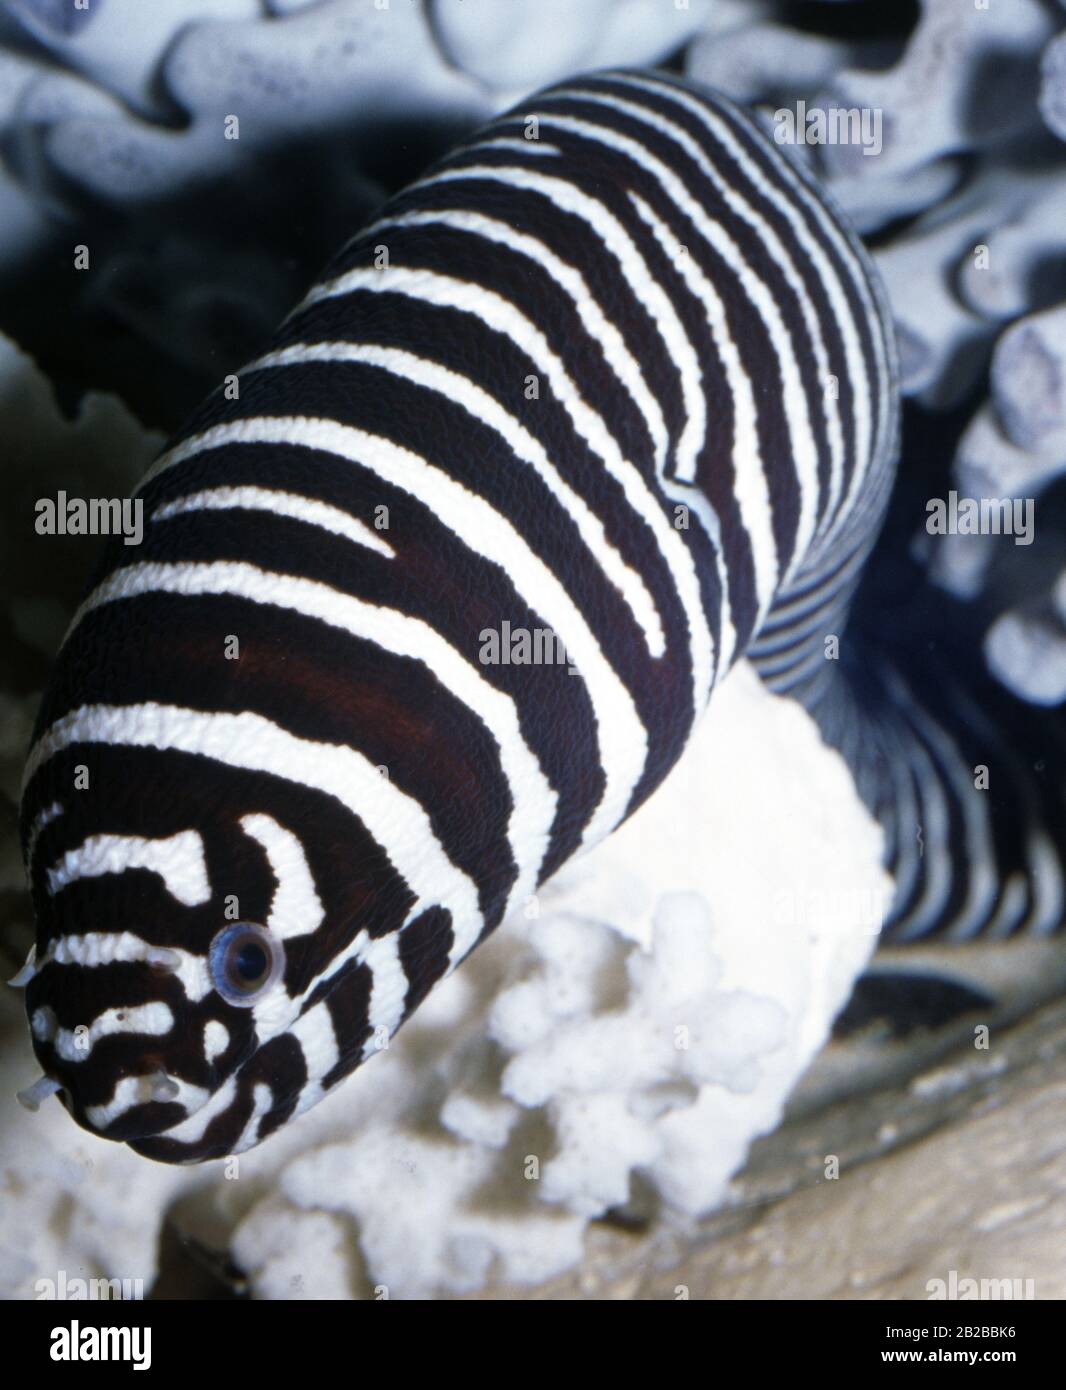 Zebra moray, Gymnomuraena zebra Stock Photo